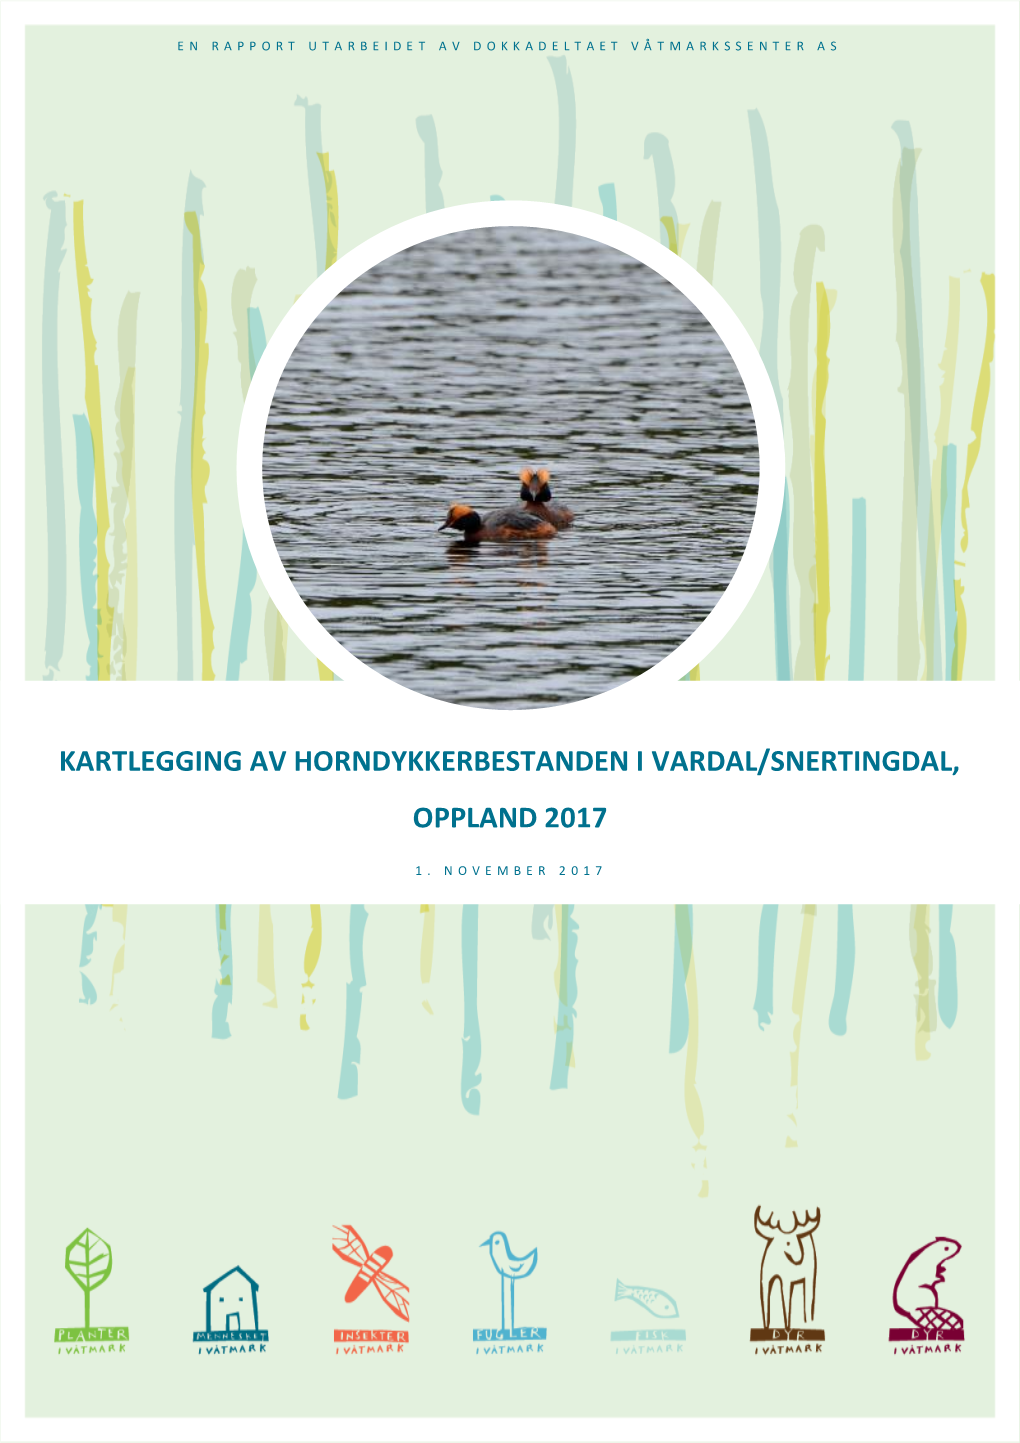 Kartlegging Av Horndykkerbestanden I Vardal/Snertingdal, Oppland 2017